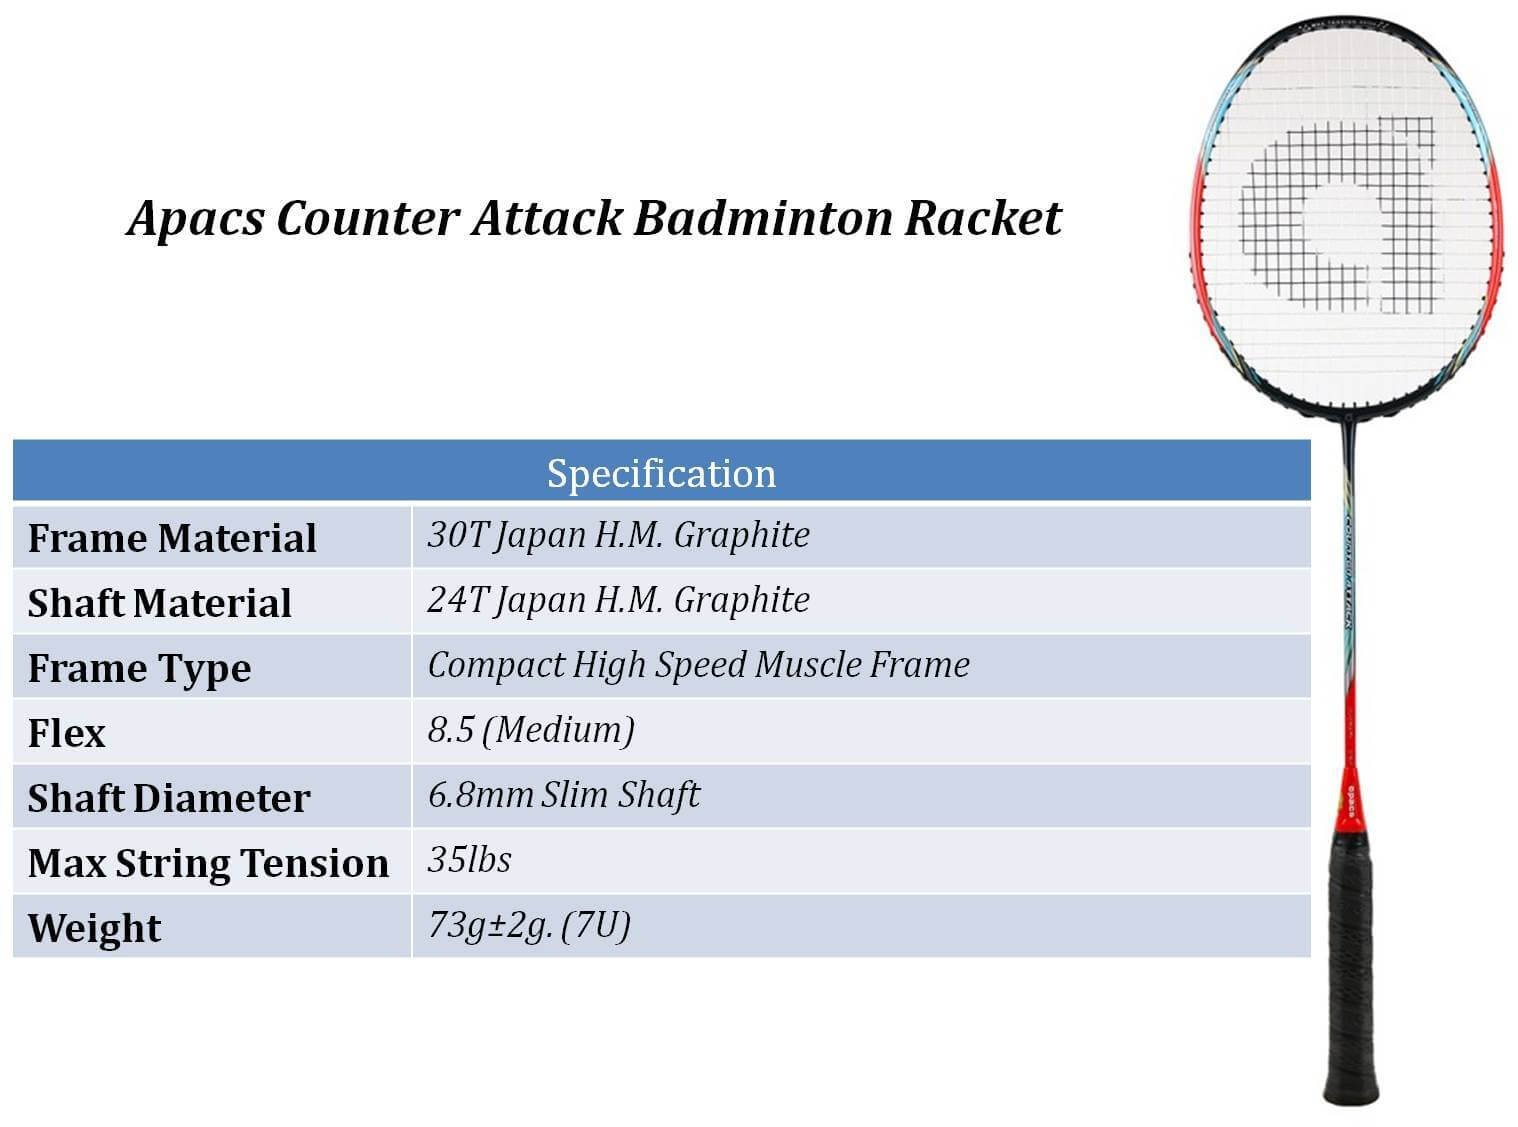 Apacs_Counter_Attack_Badminton_Racket_Khelmart